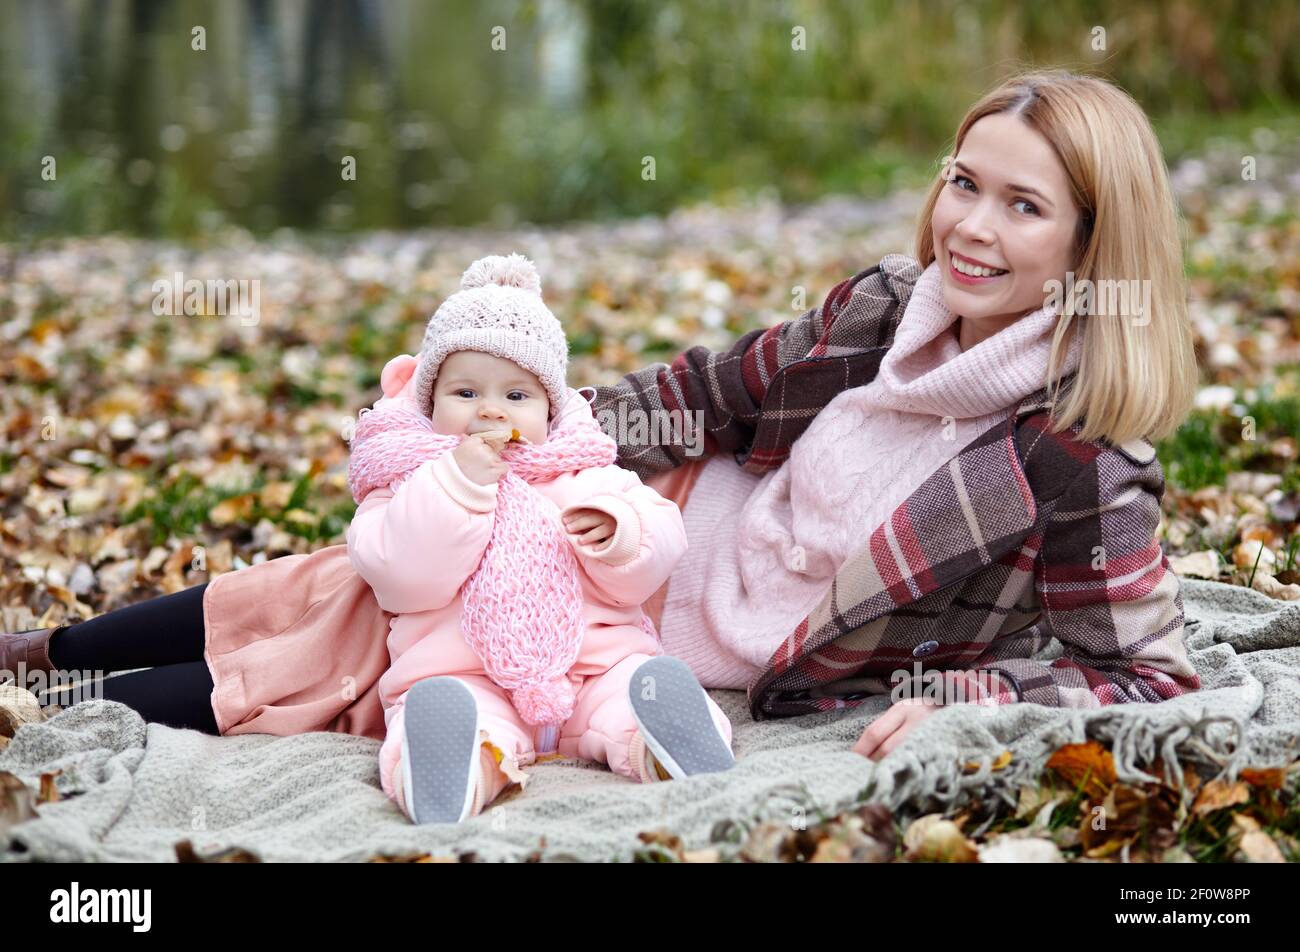 Schöne Baby-Mädchen mit Mutter auf dem Plaid sitzen. Familien im Freien. Liebenswert kleines Mädchen in warmen Kleidern bei Picknick im Herbst Park an sonnigen Tag. Pret Stockfoto